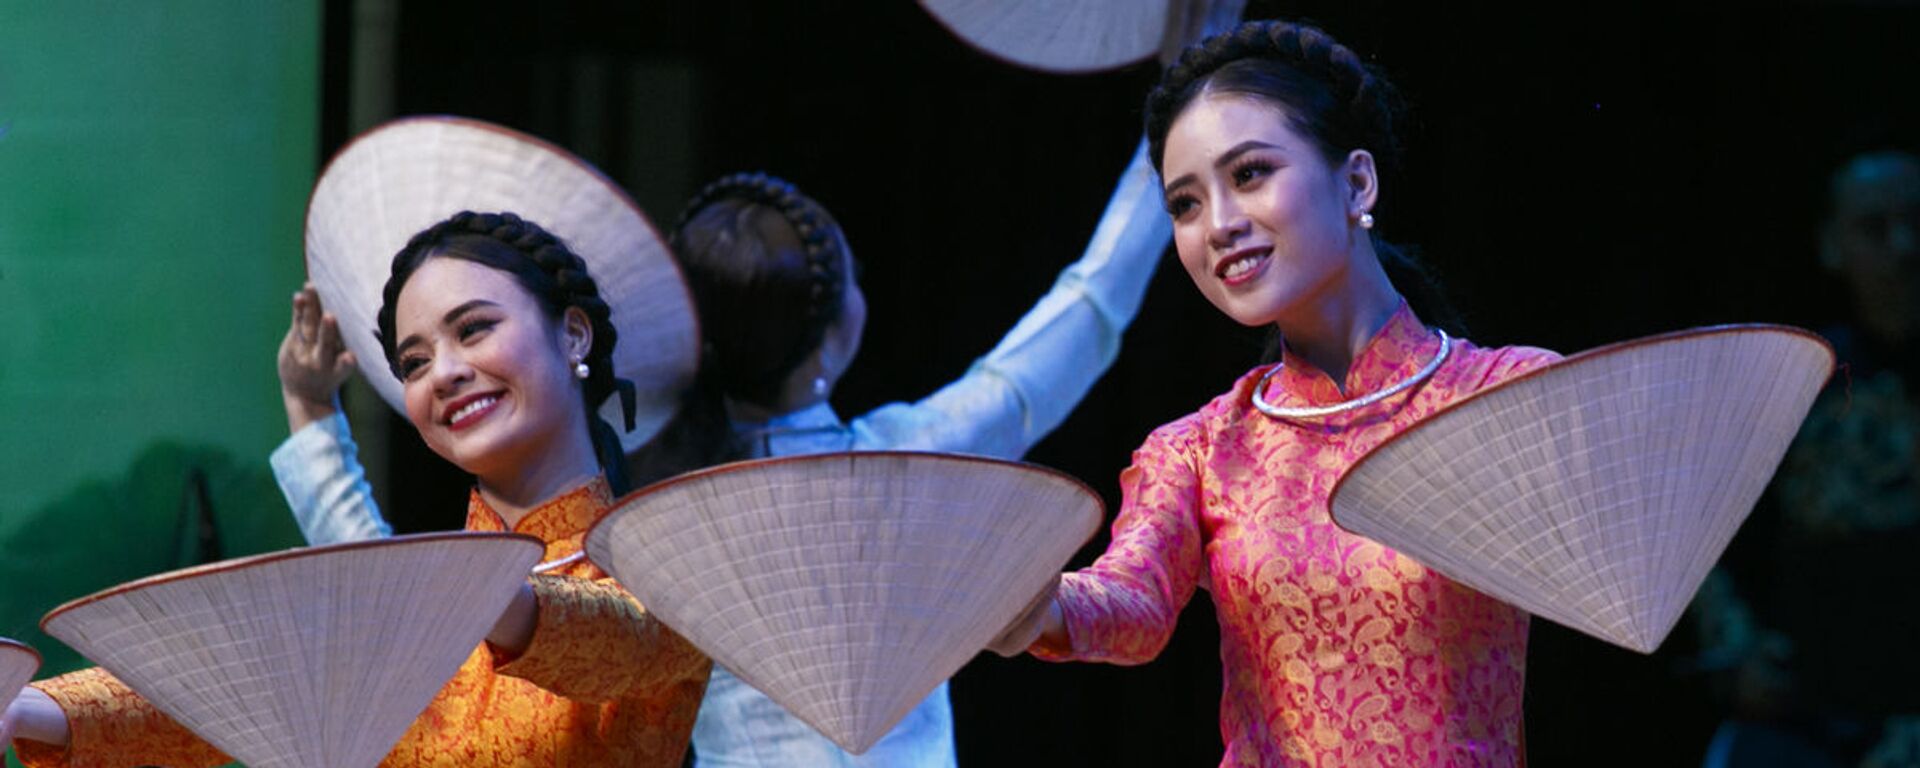 Tiết mục biểu diễn của các nghệ sĩ Việt Nam tại chương trình ca nhạc khai mạc Năm chéo hữu nghị Nga Việt - Sputnik Việt Nam, 1920, 26.08.2022